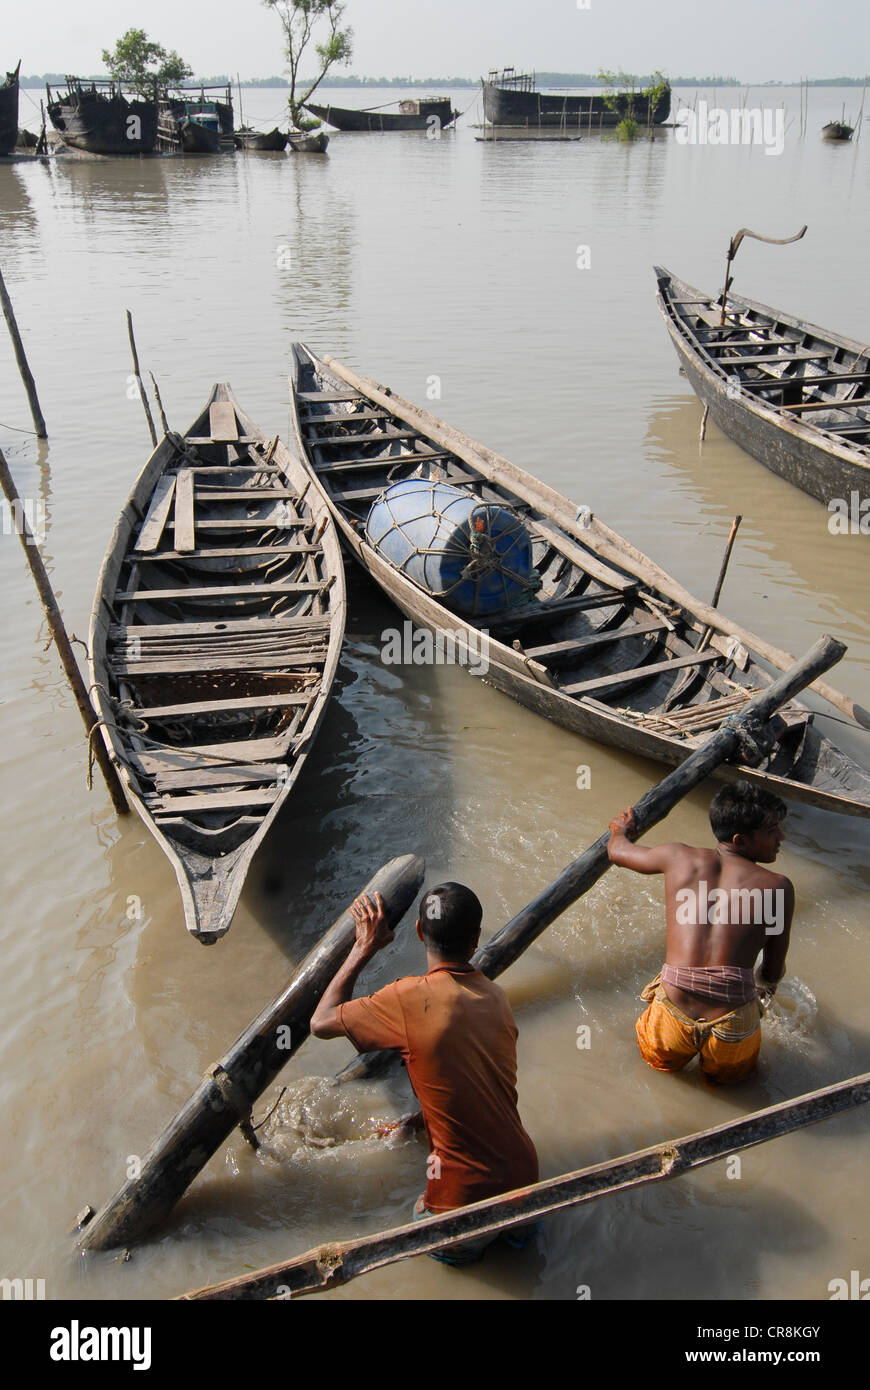 Bangladesch, Dorf Kalabogi am Fluss Shibsha in der Nähe von Golf von Bengalen, Völker sind am stärksten vom Klimawandel betroffen Stockfoto